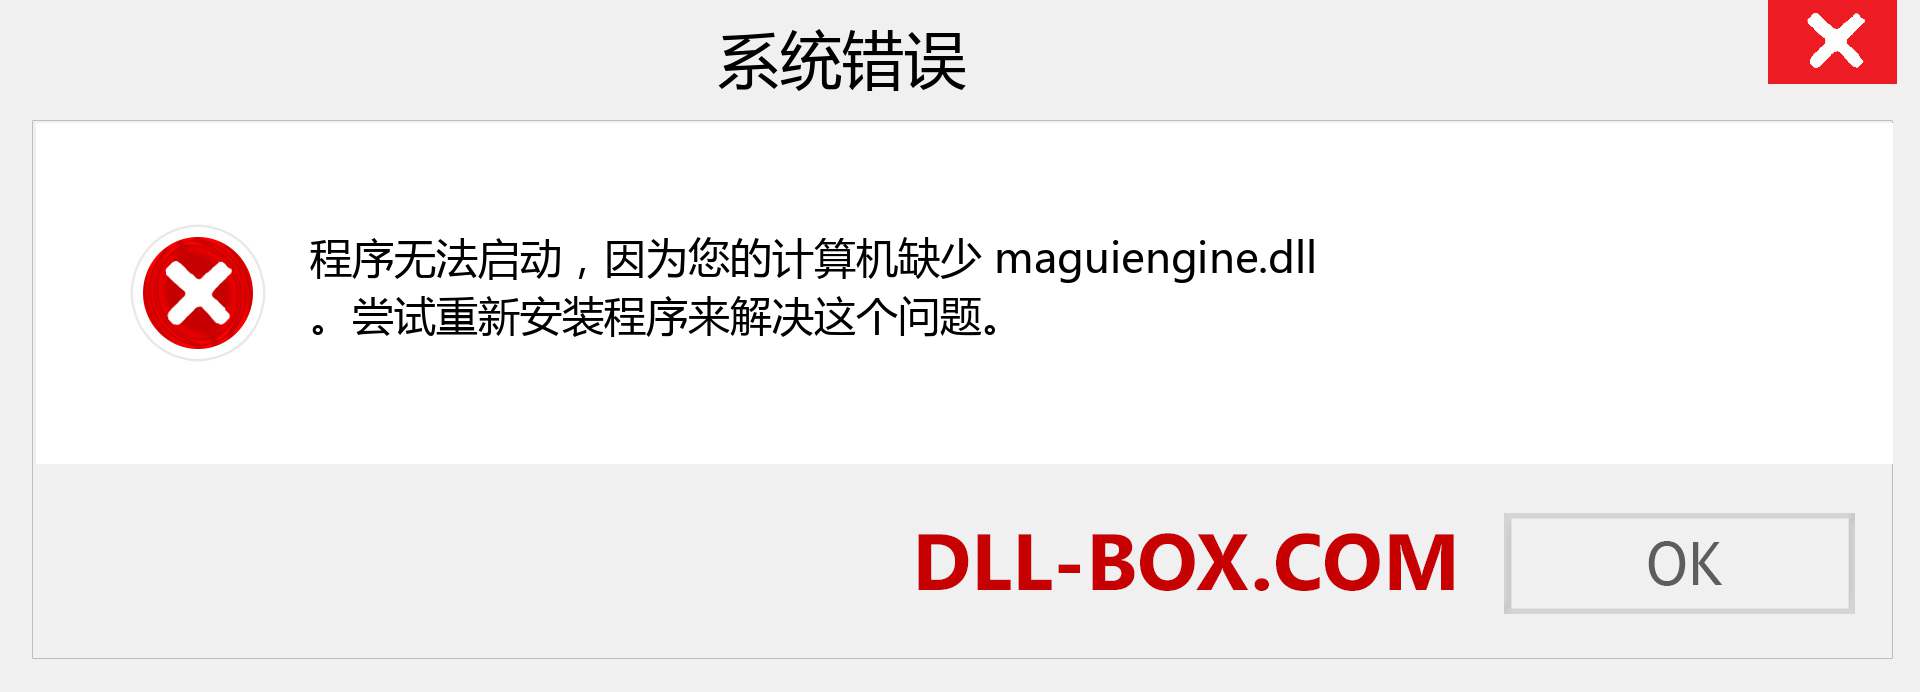 maguiengine.dll 文件丢失？。 适用于 Windows 7、8、10 的下载 - 修复 Windows、照片、图像上的 maguiengine dll 丢失错误